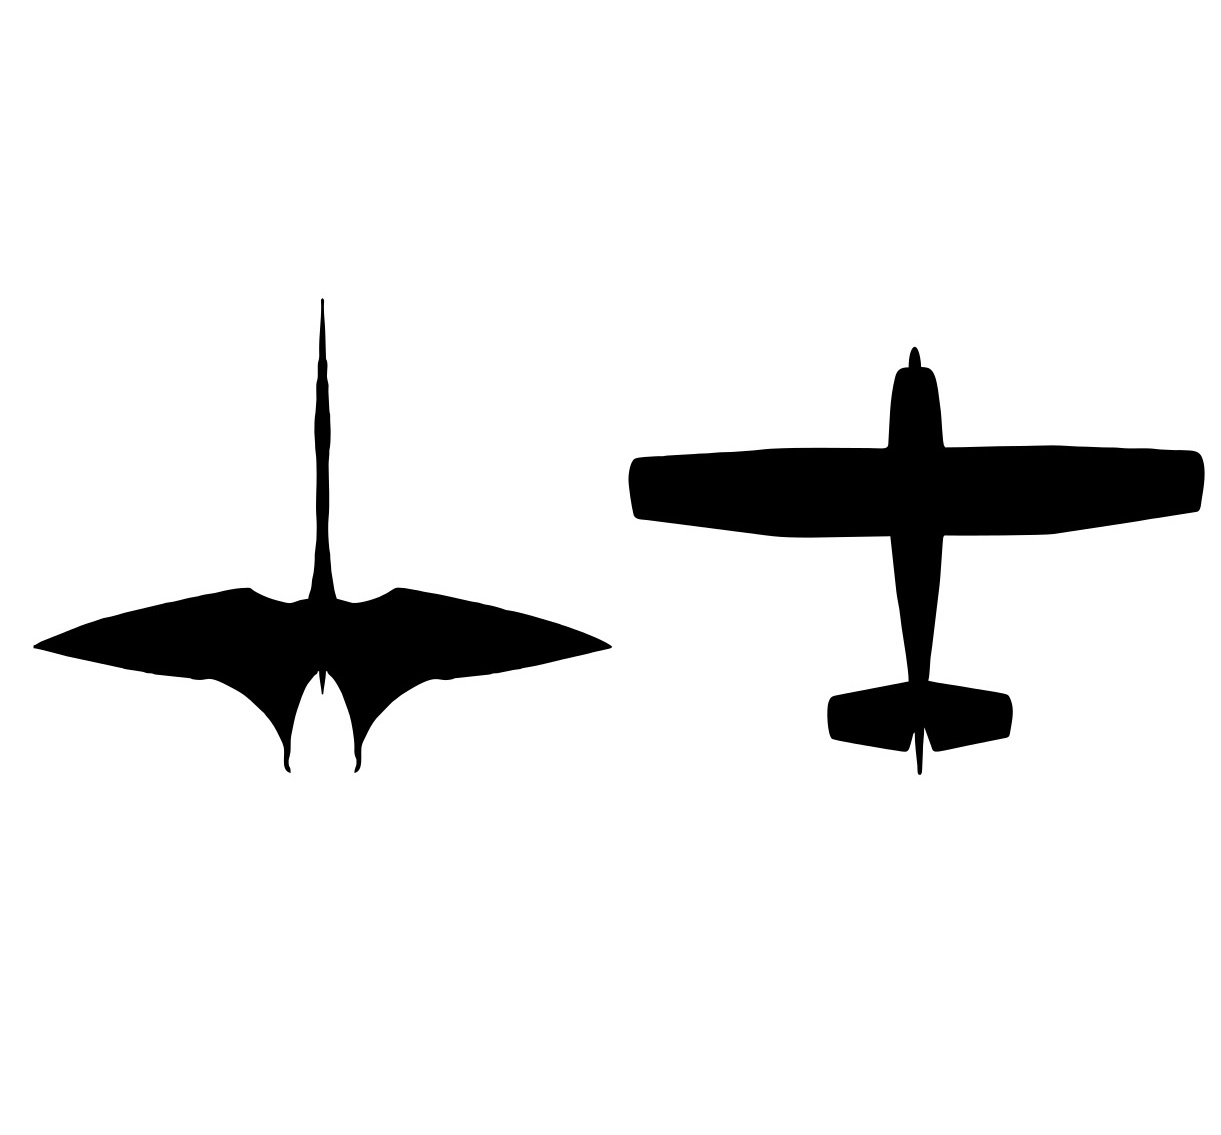 Porovnání velikosti siluety dopravního letadla Cessna 172 a ptakoještěra druhu Quetzalcoatlus northropi. Ačkoliv člověkem vyrobený dopravní prostředek je několikanásobně těžší než lehce stavěný pterosaur, pravěký letec by vítězil v celkové výšce při 